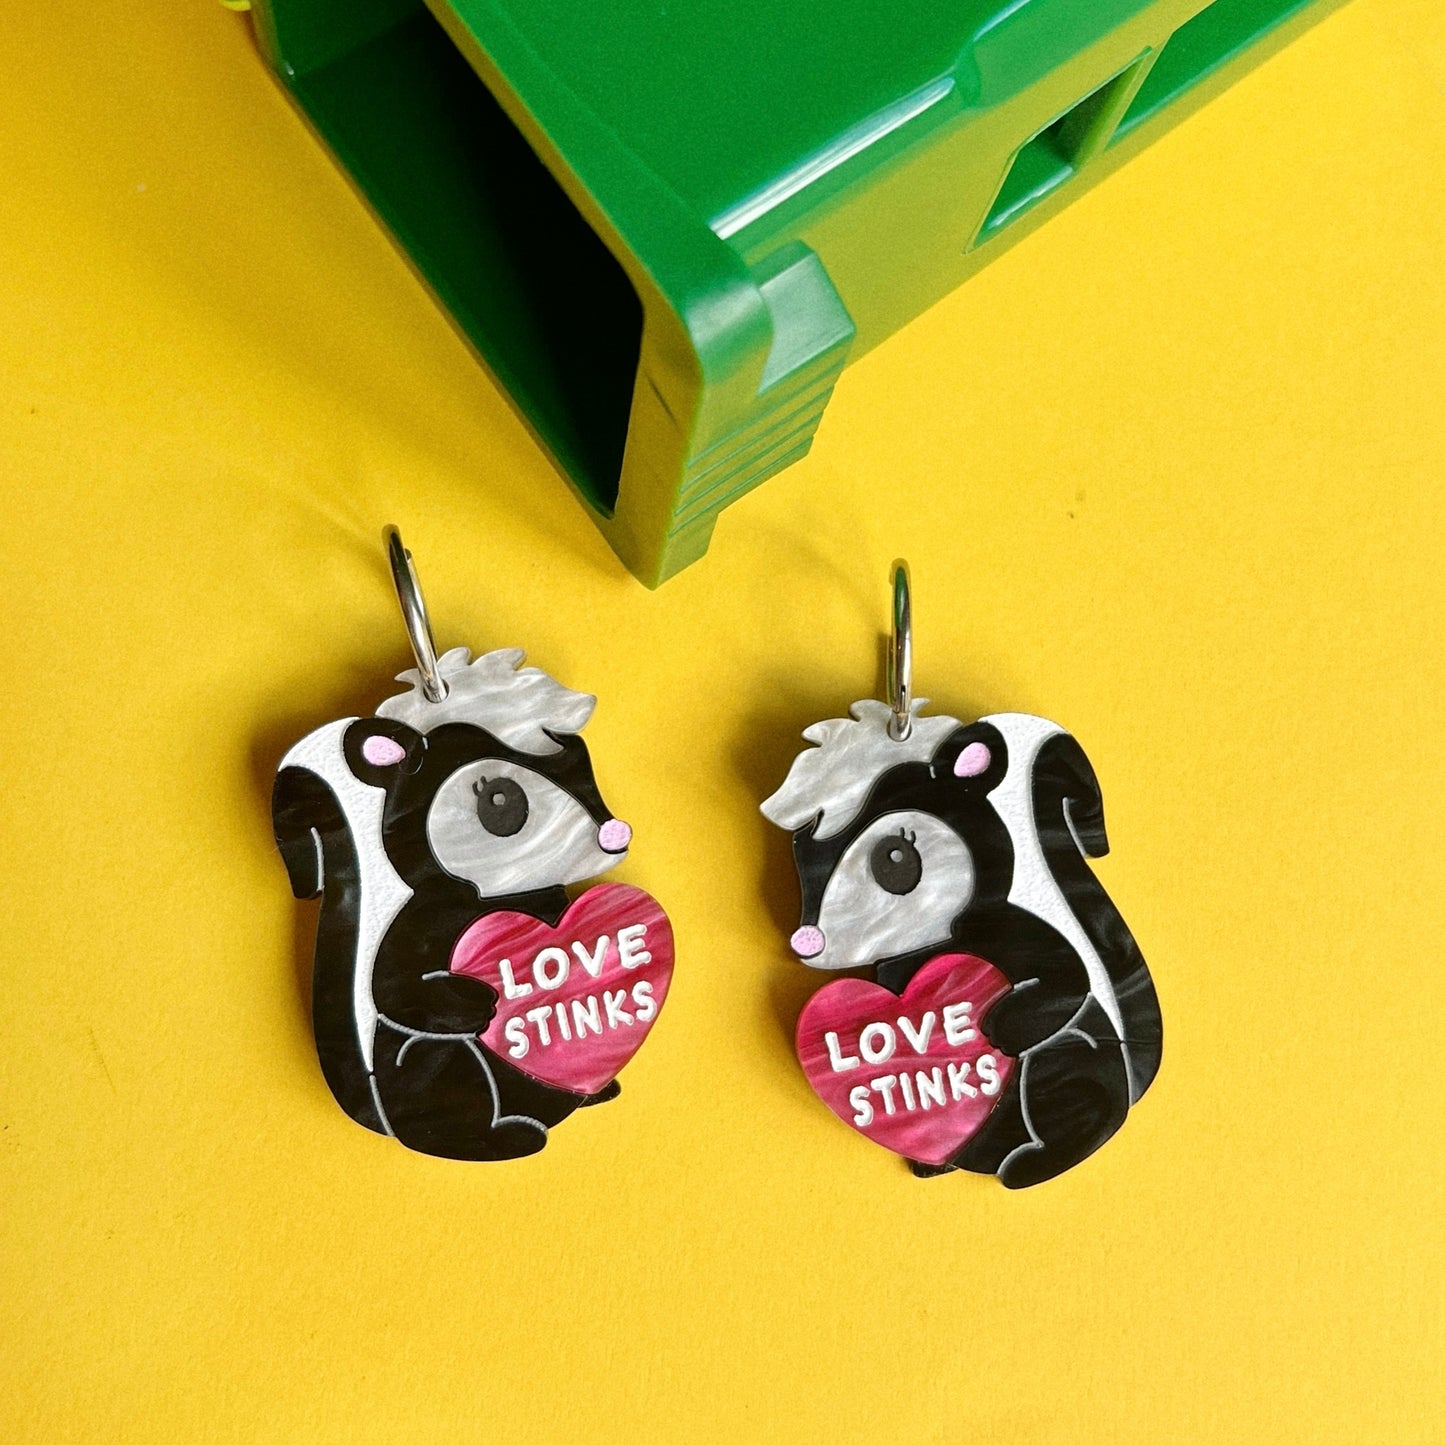 Love stinks skunk earrings